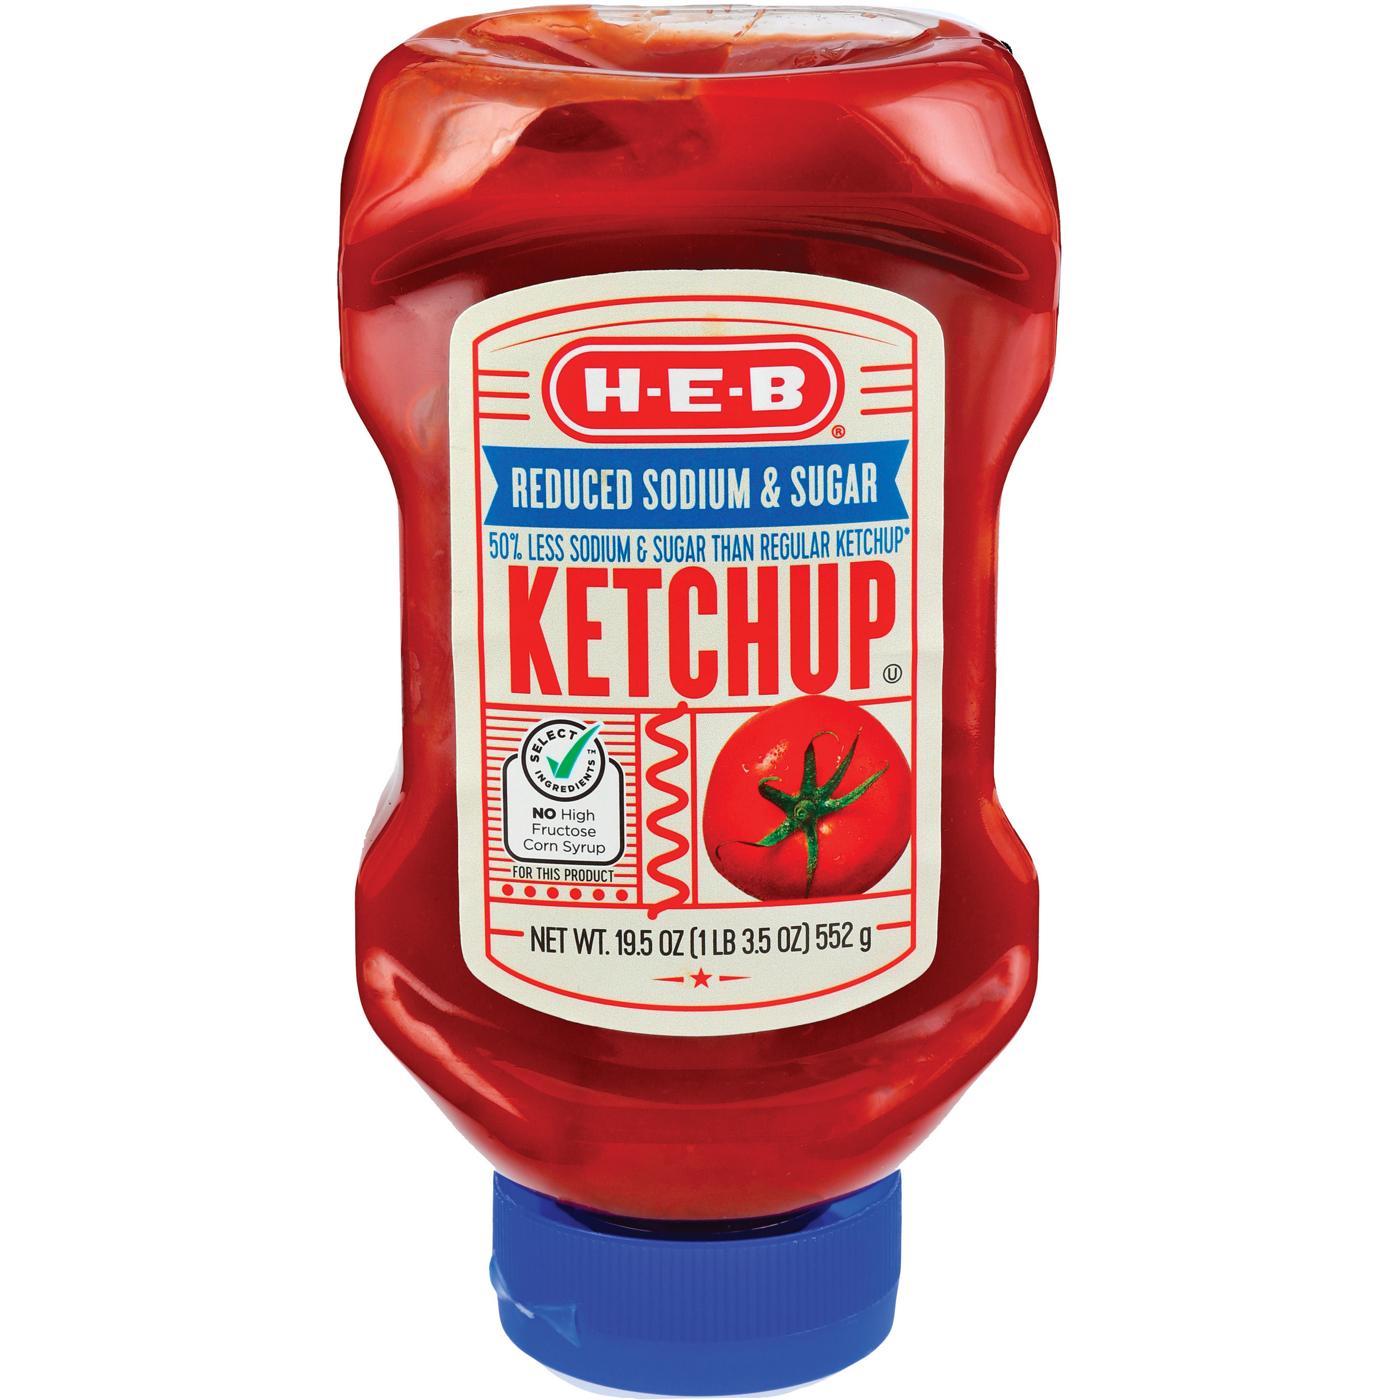 H-E-B Tomato Ketchup – Reduced Sodium & Sugar; image 1 of 2